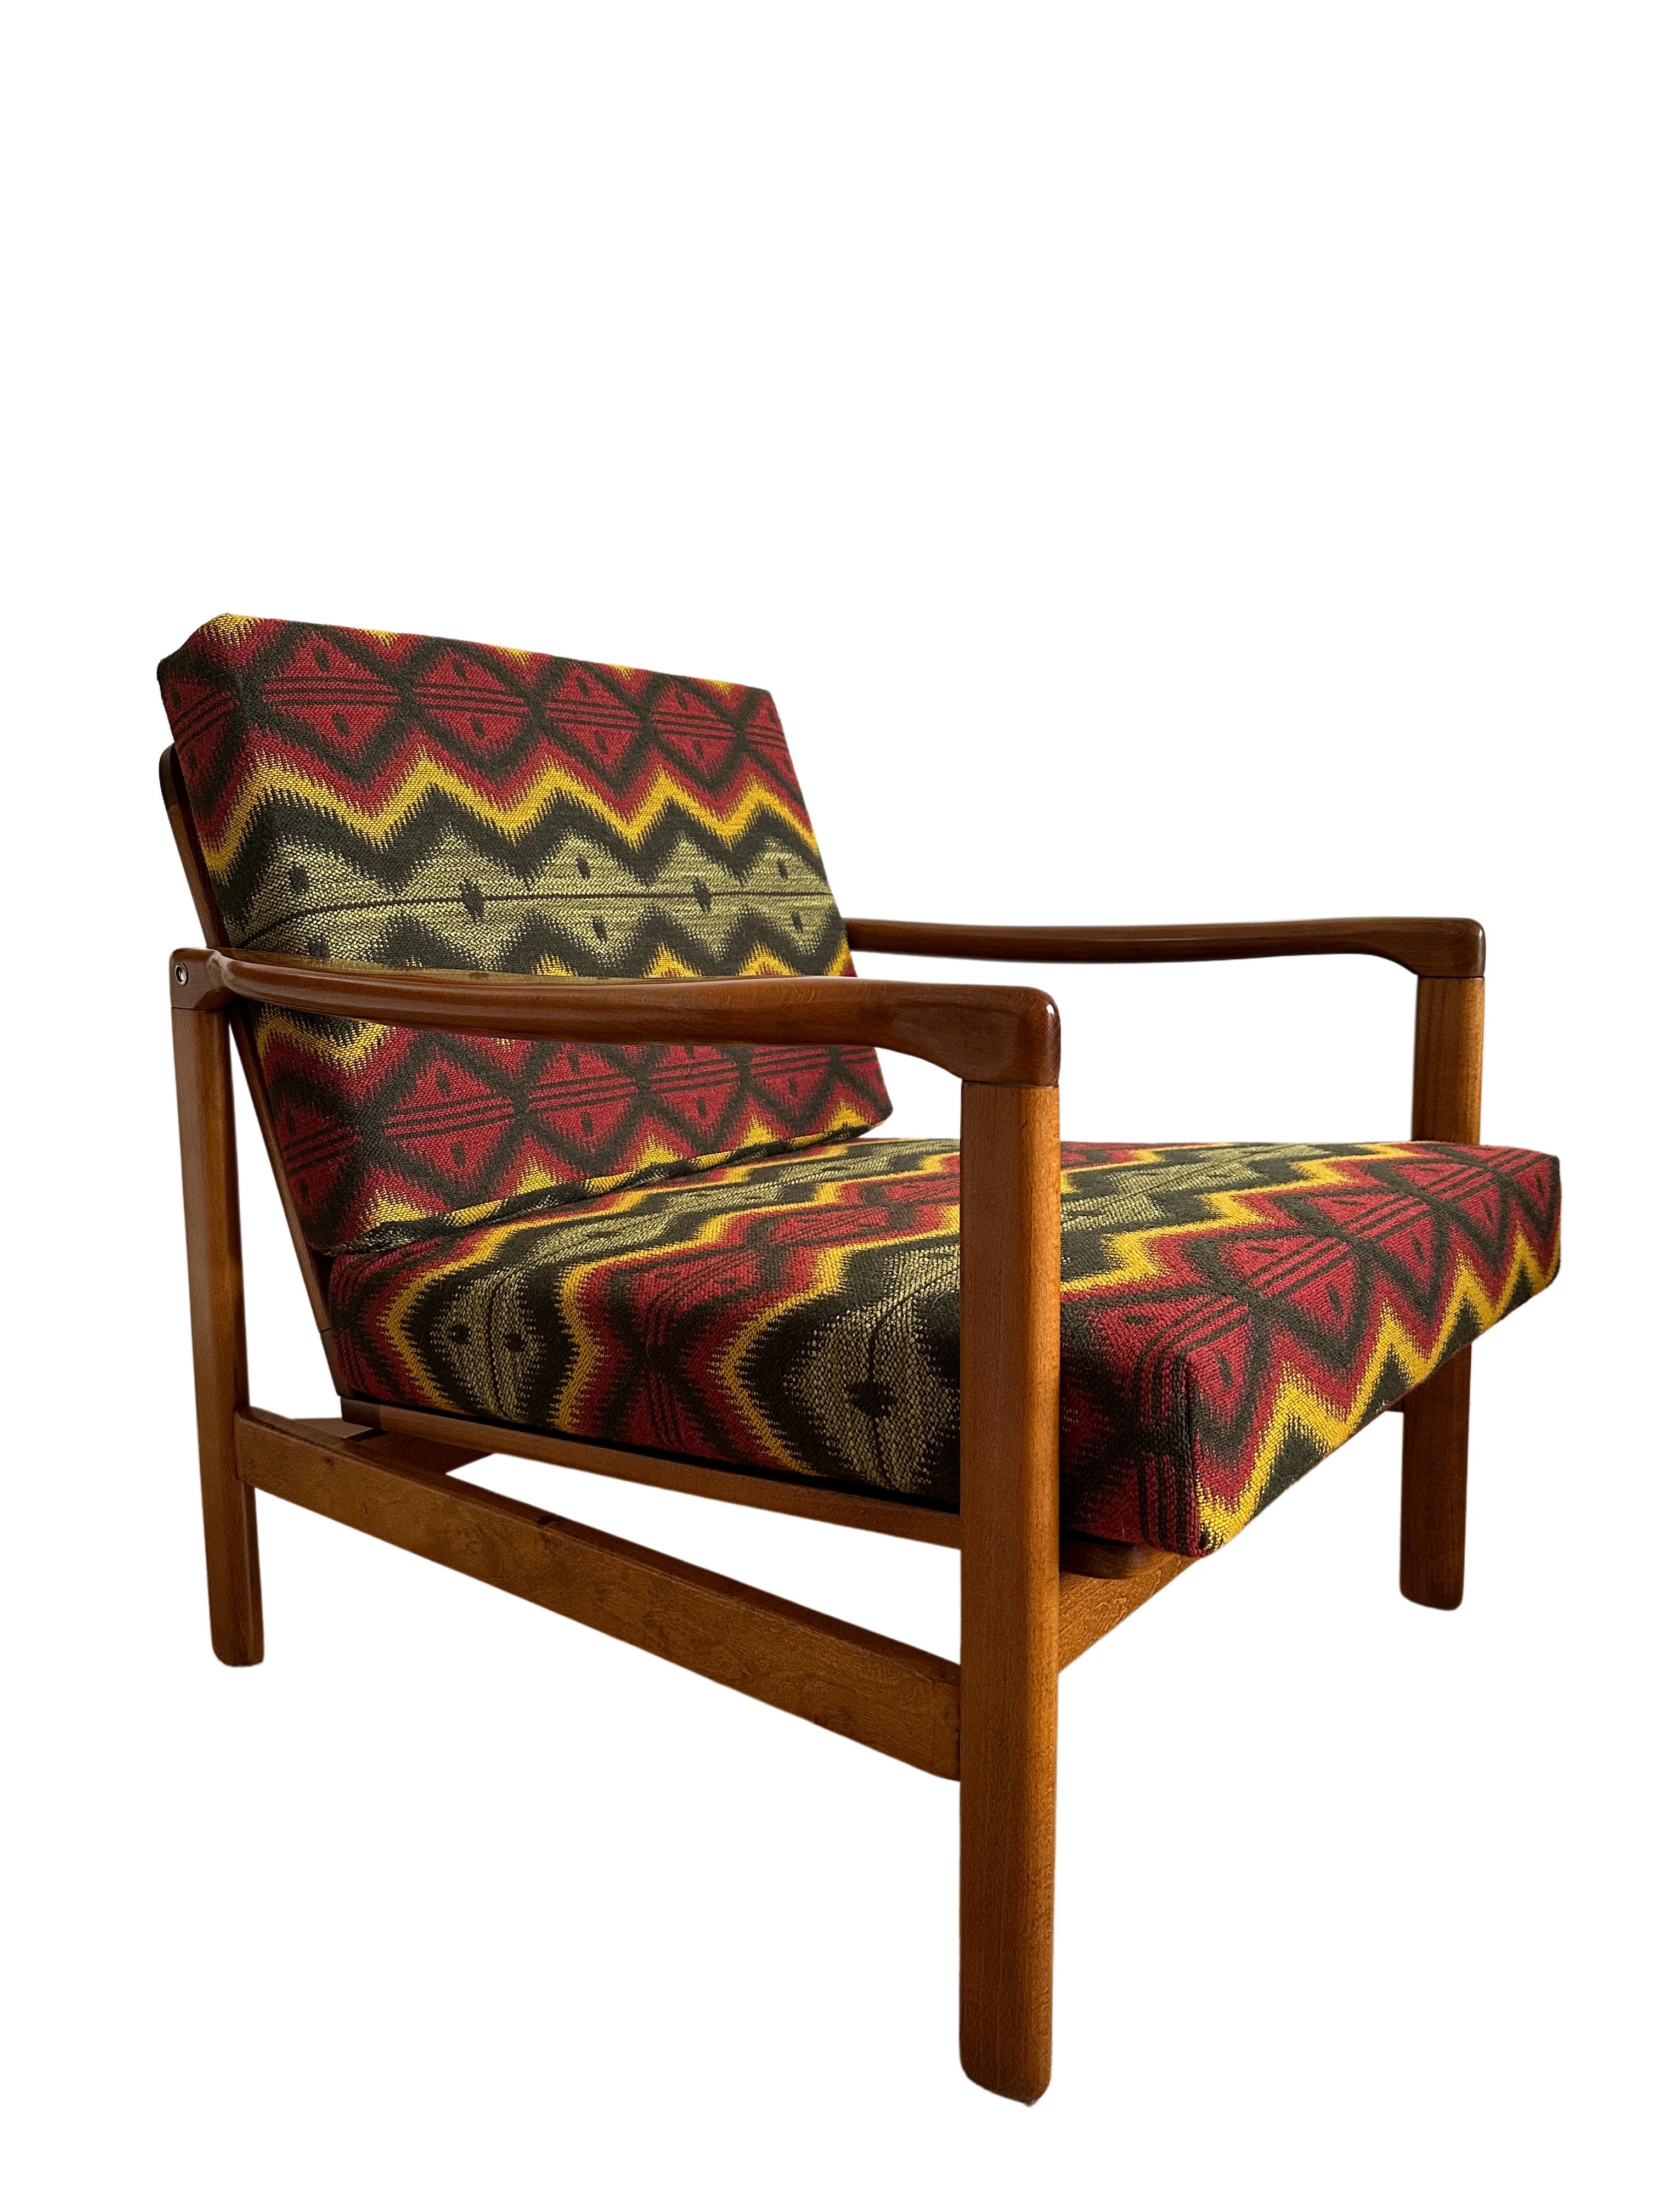 Schöner und sehr bequemer Sessel Modell B-7752, entworfen von Zenon Baczyk, wurde in den 1960er Jahren von Swarzedzkie Fabryki Mebli in Polen hergestellt. 

Die Struktur besteht aus Buchenholz in tiefem Honigbraun, das mit einem seidenmatten Lack